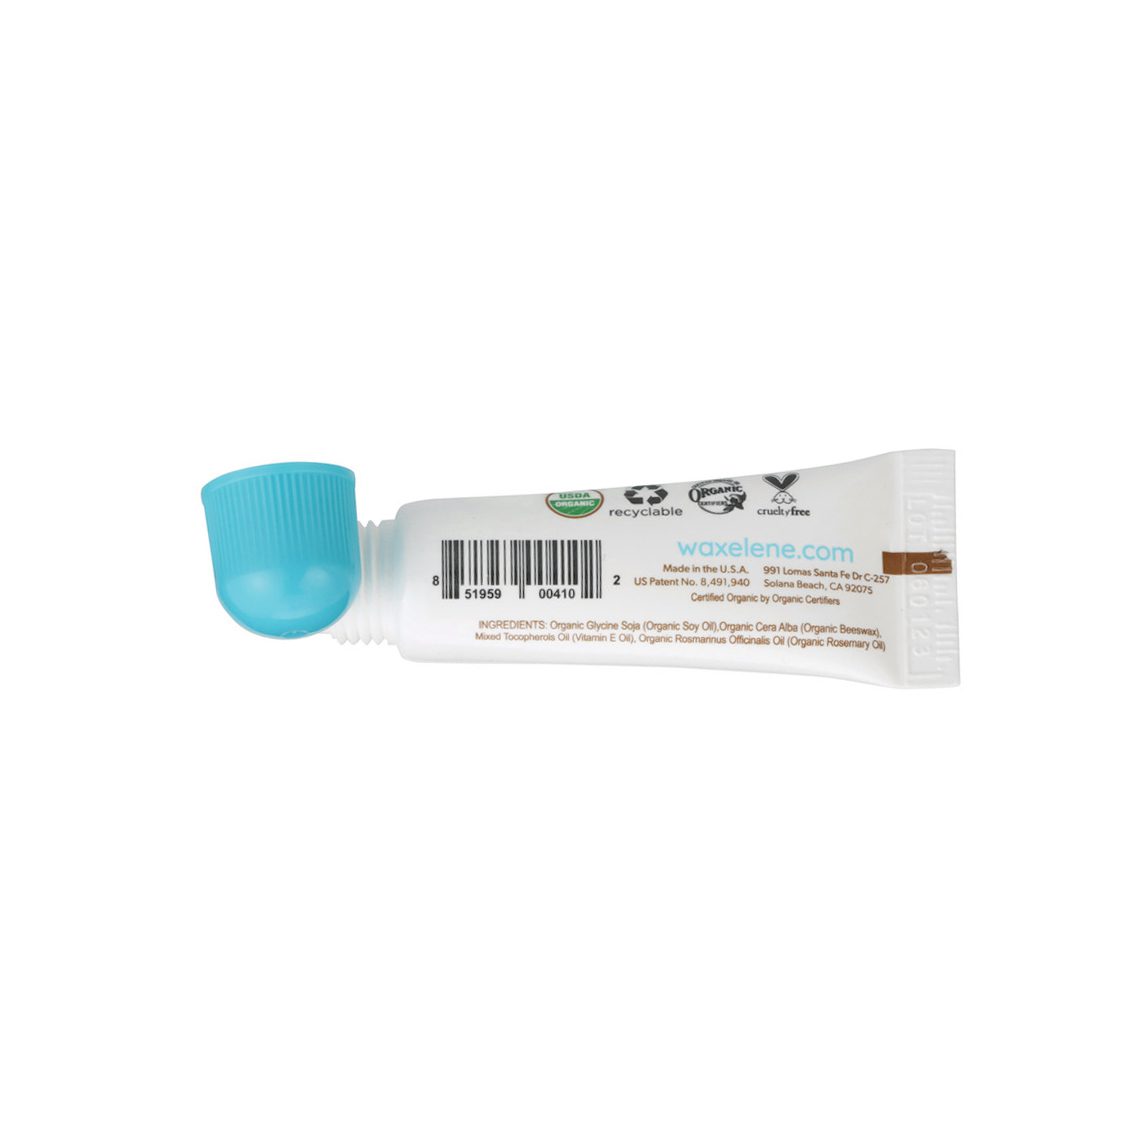 Waxelene Multi-Purpose Ointment Lip Tube .25OZ - Neo Essentials Store